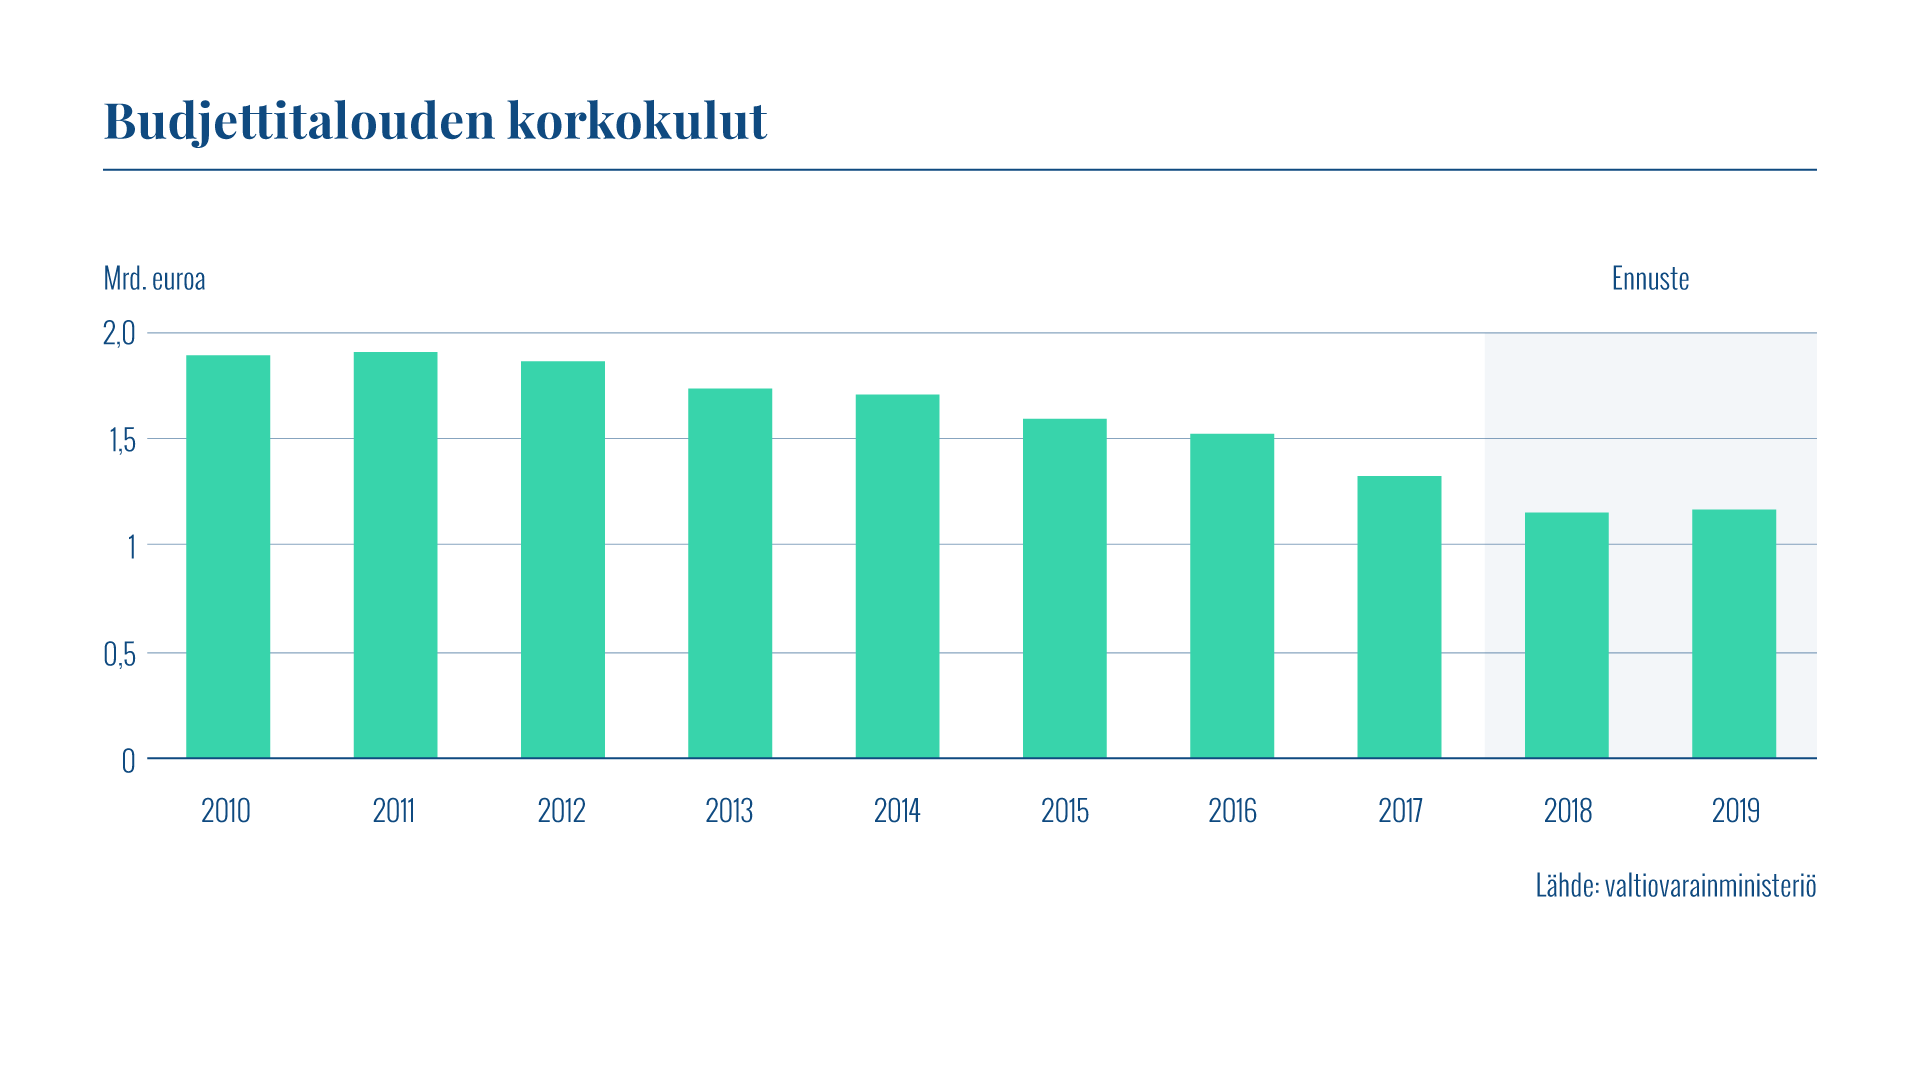 Kaaviossa esitetään budjettivelan vuosittaiset korkokulut vuosilta 2010–19. Korkokulut vuonna 2017 olivat 1,33 miljardia euroa. Ennuste vuodelle 2018 on 1,15 miljardia euroa.